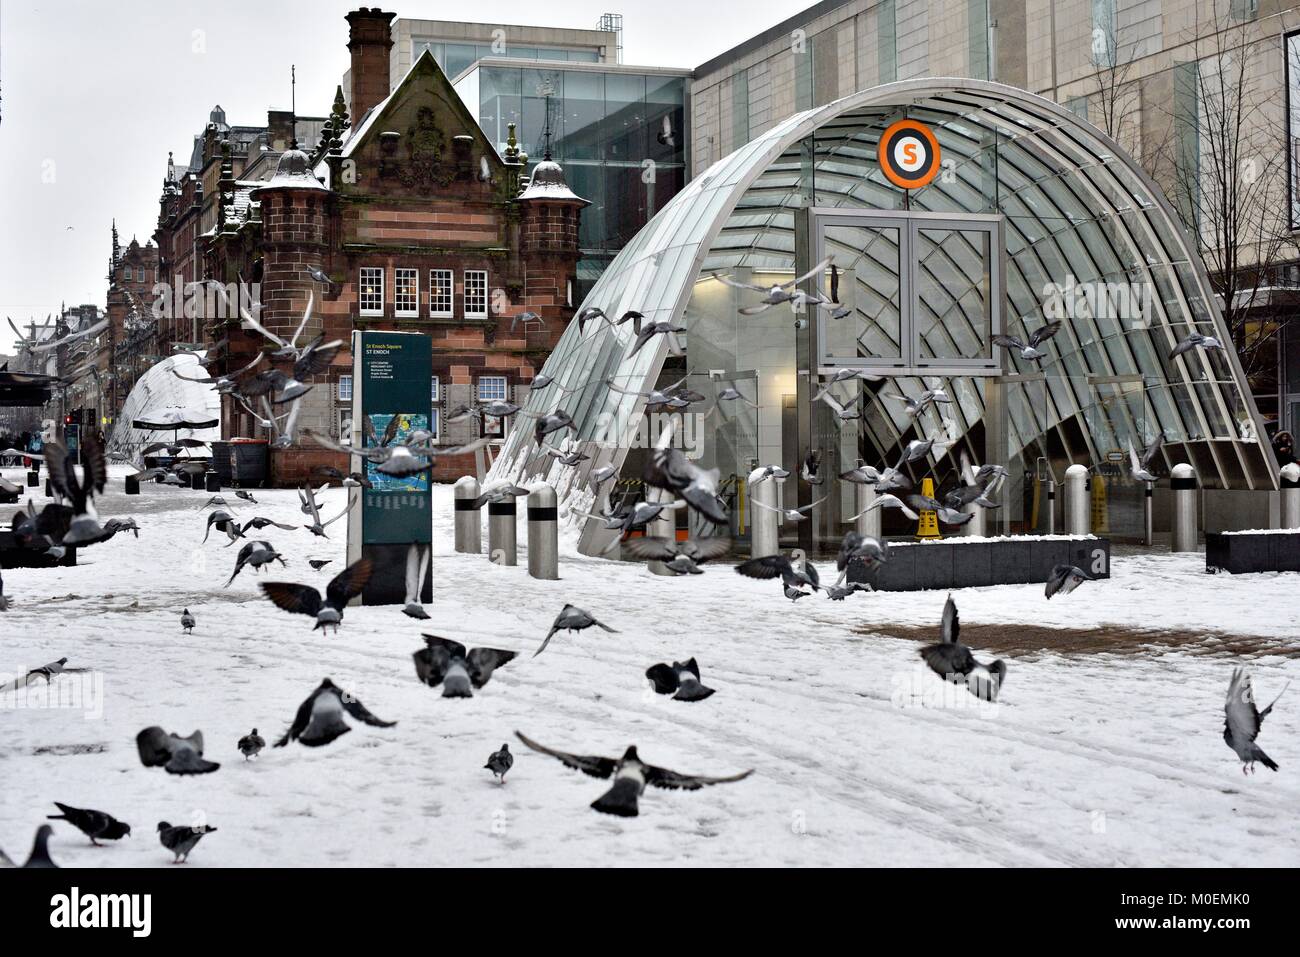 Glasgow, Royaume-Uni. Jan 21, 2018. Un troupeau de pigeons s'envolent un harfang métro St Enoch statiion Crédit : Tony Clerkson/Alamy Live News Banque D'Images